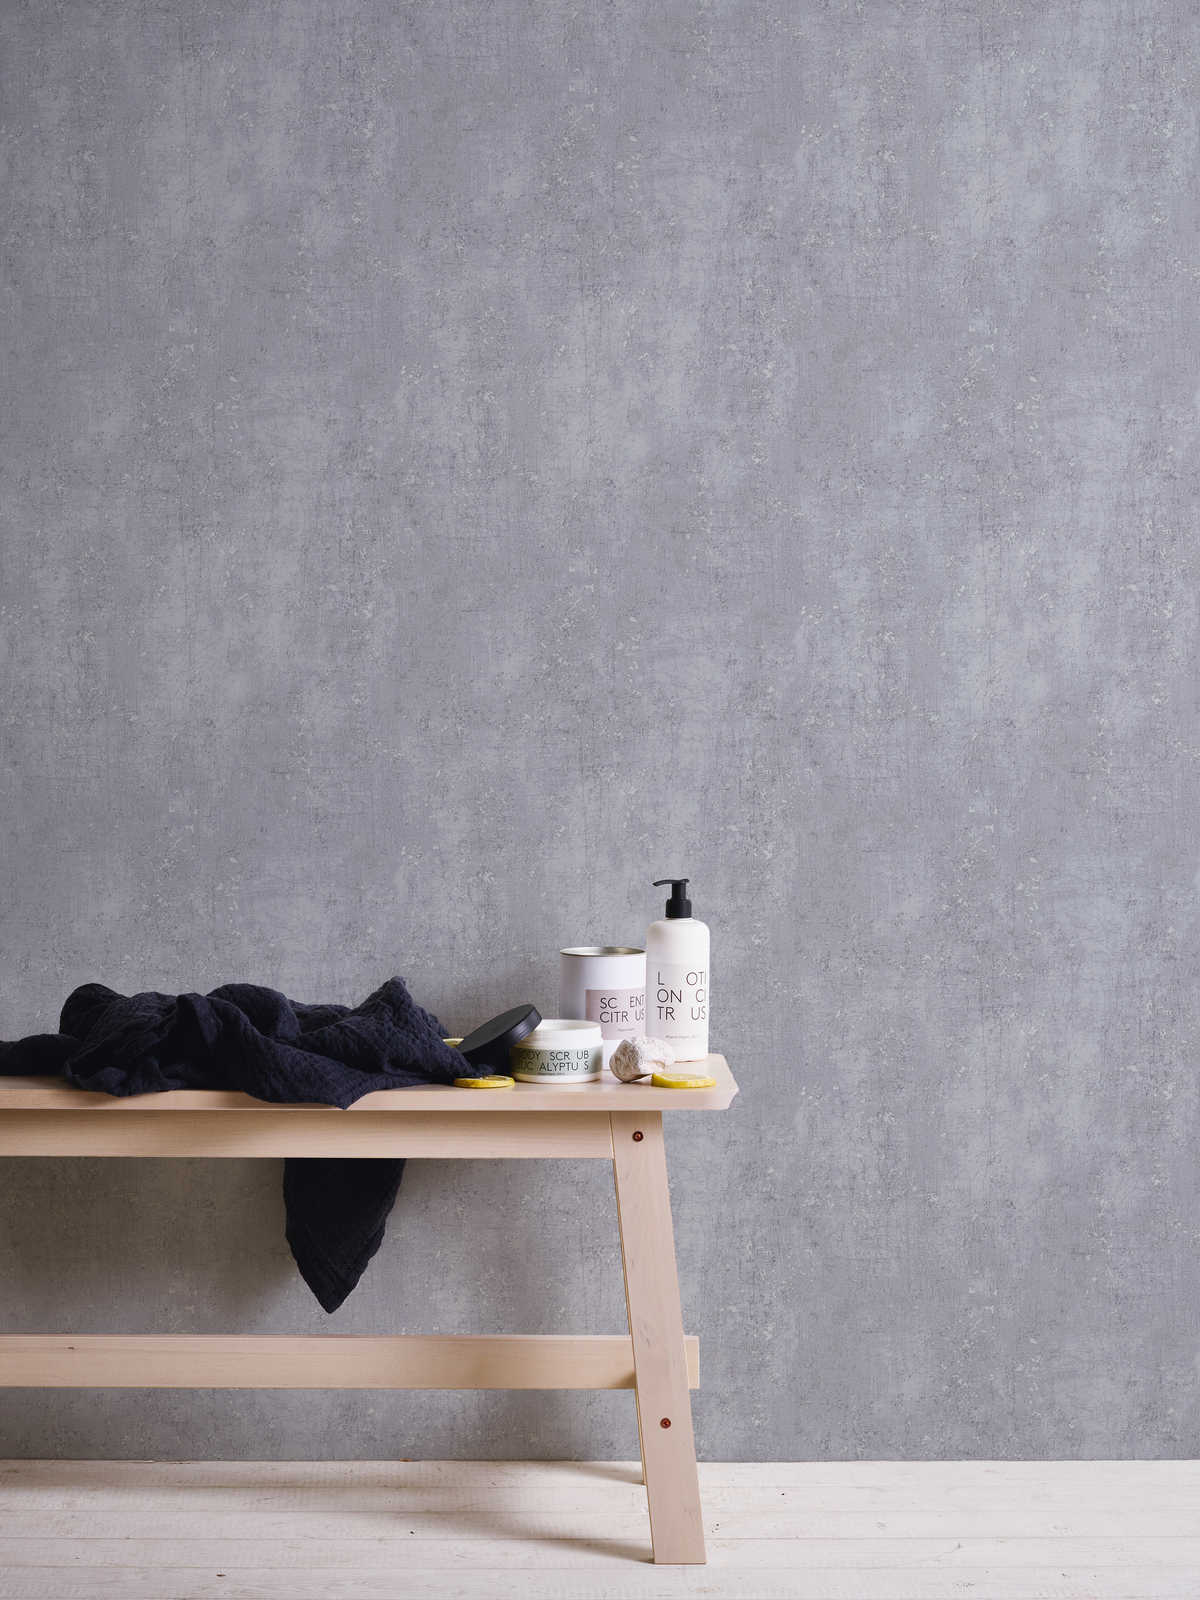             Papel pintado gris con aspecto de yeso usado - gris, metálico
        